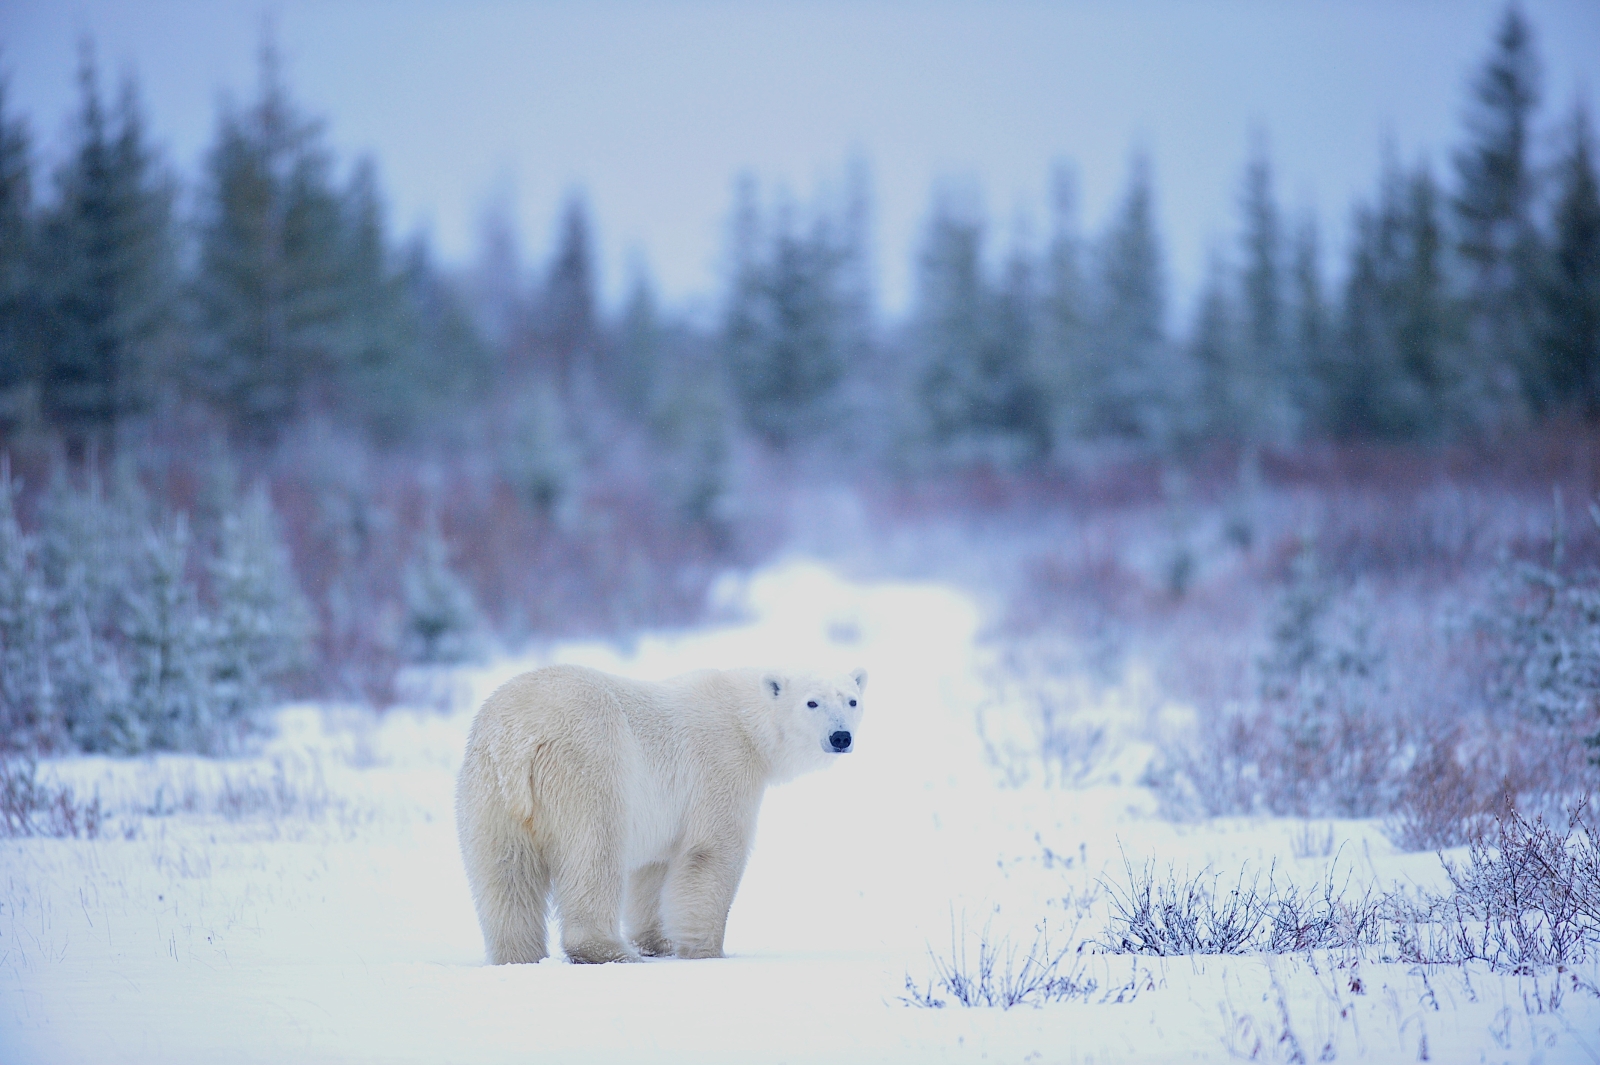 Polar bear looking back on an icy path